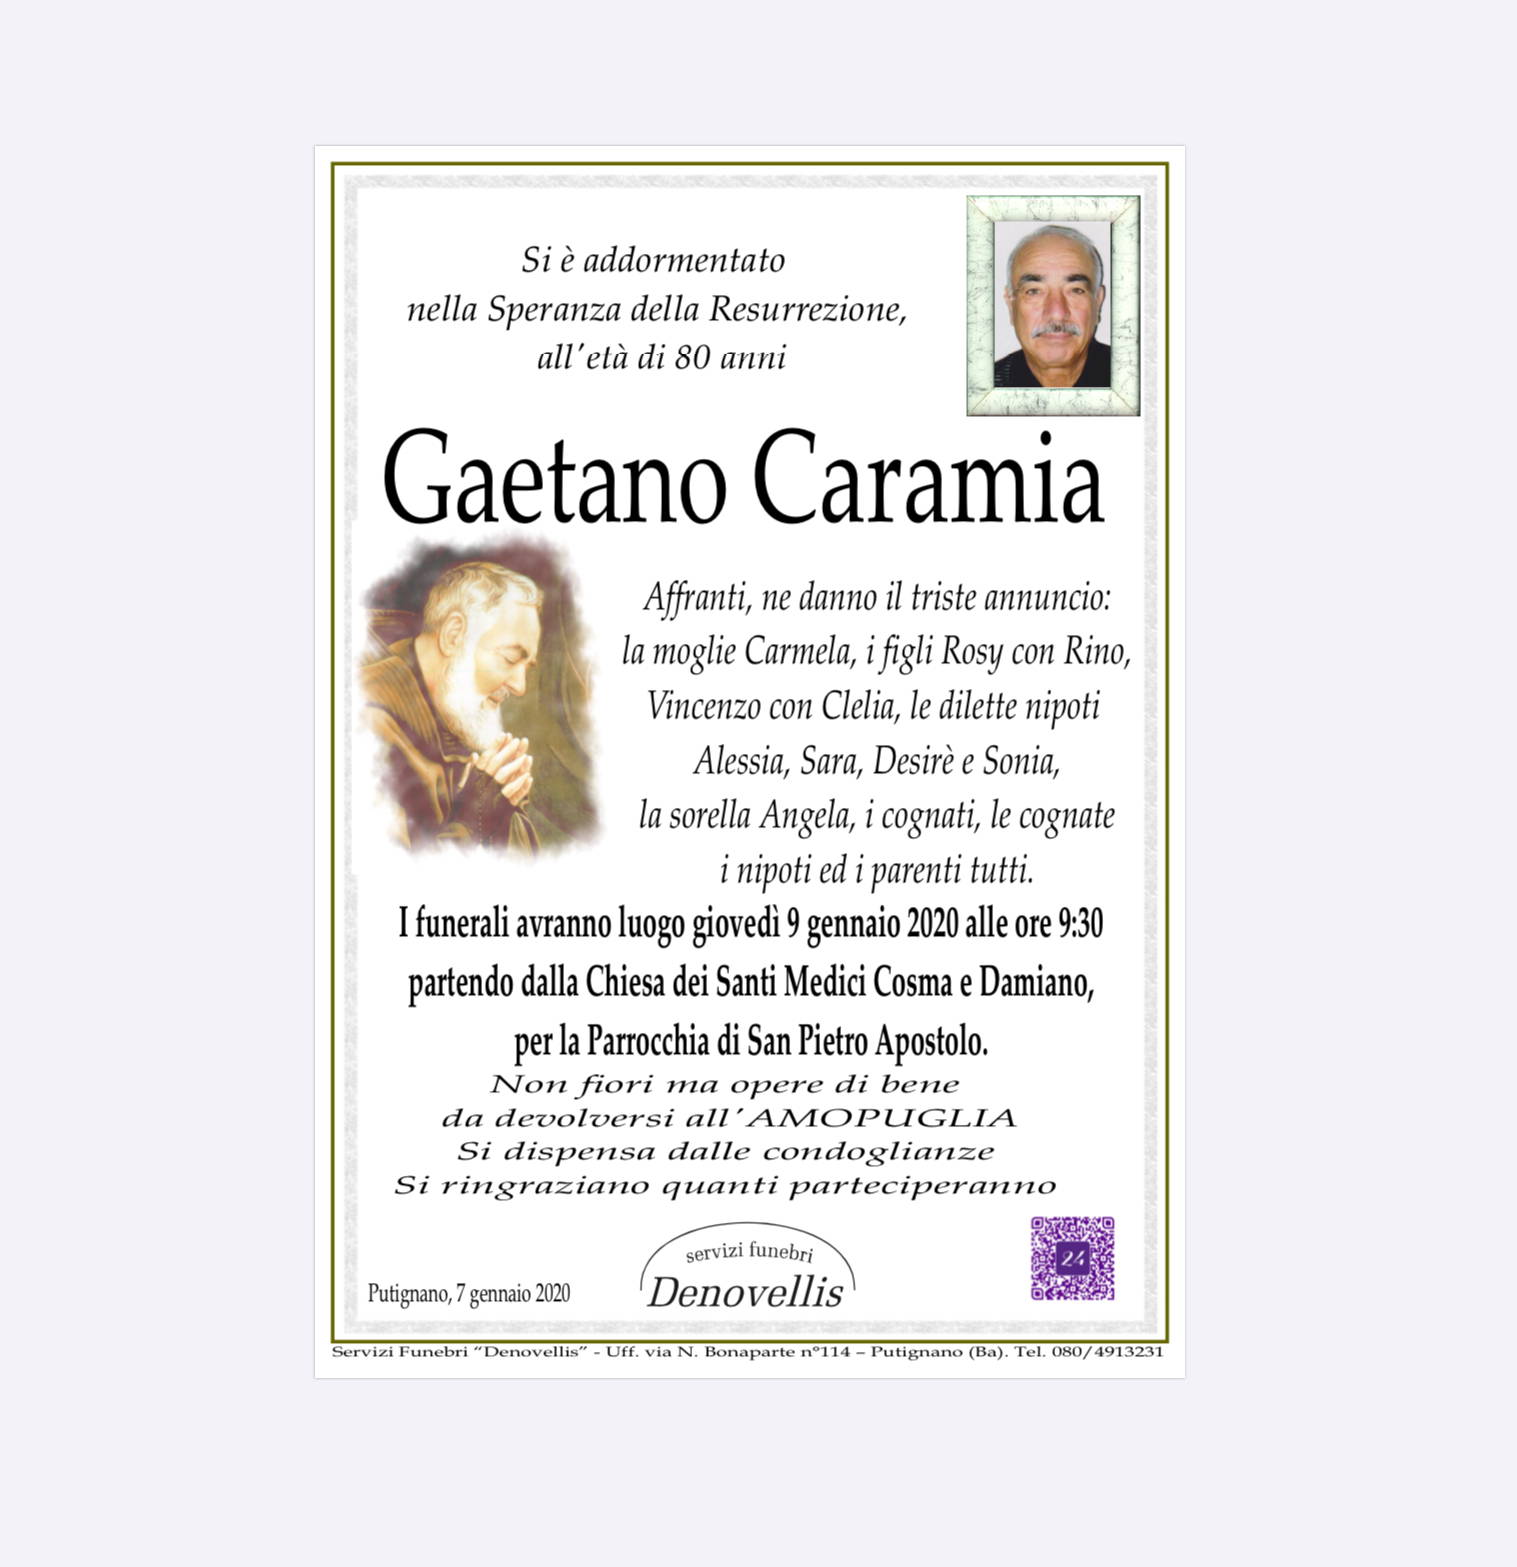 Gaetano Caramia